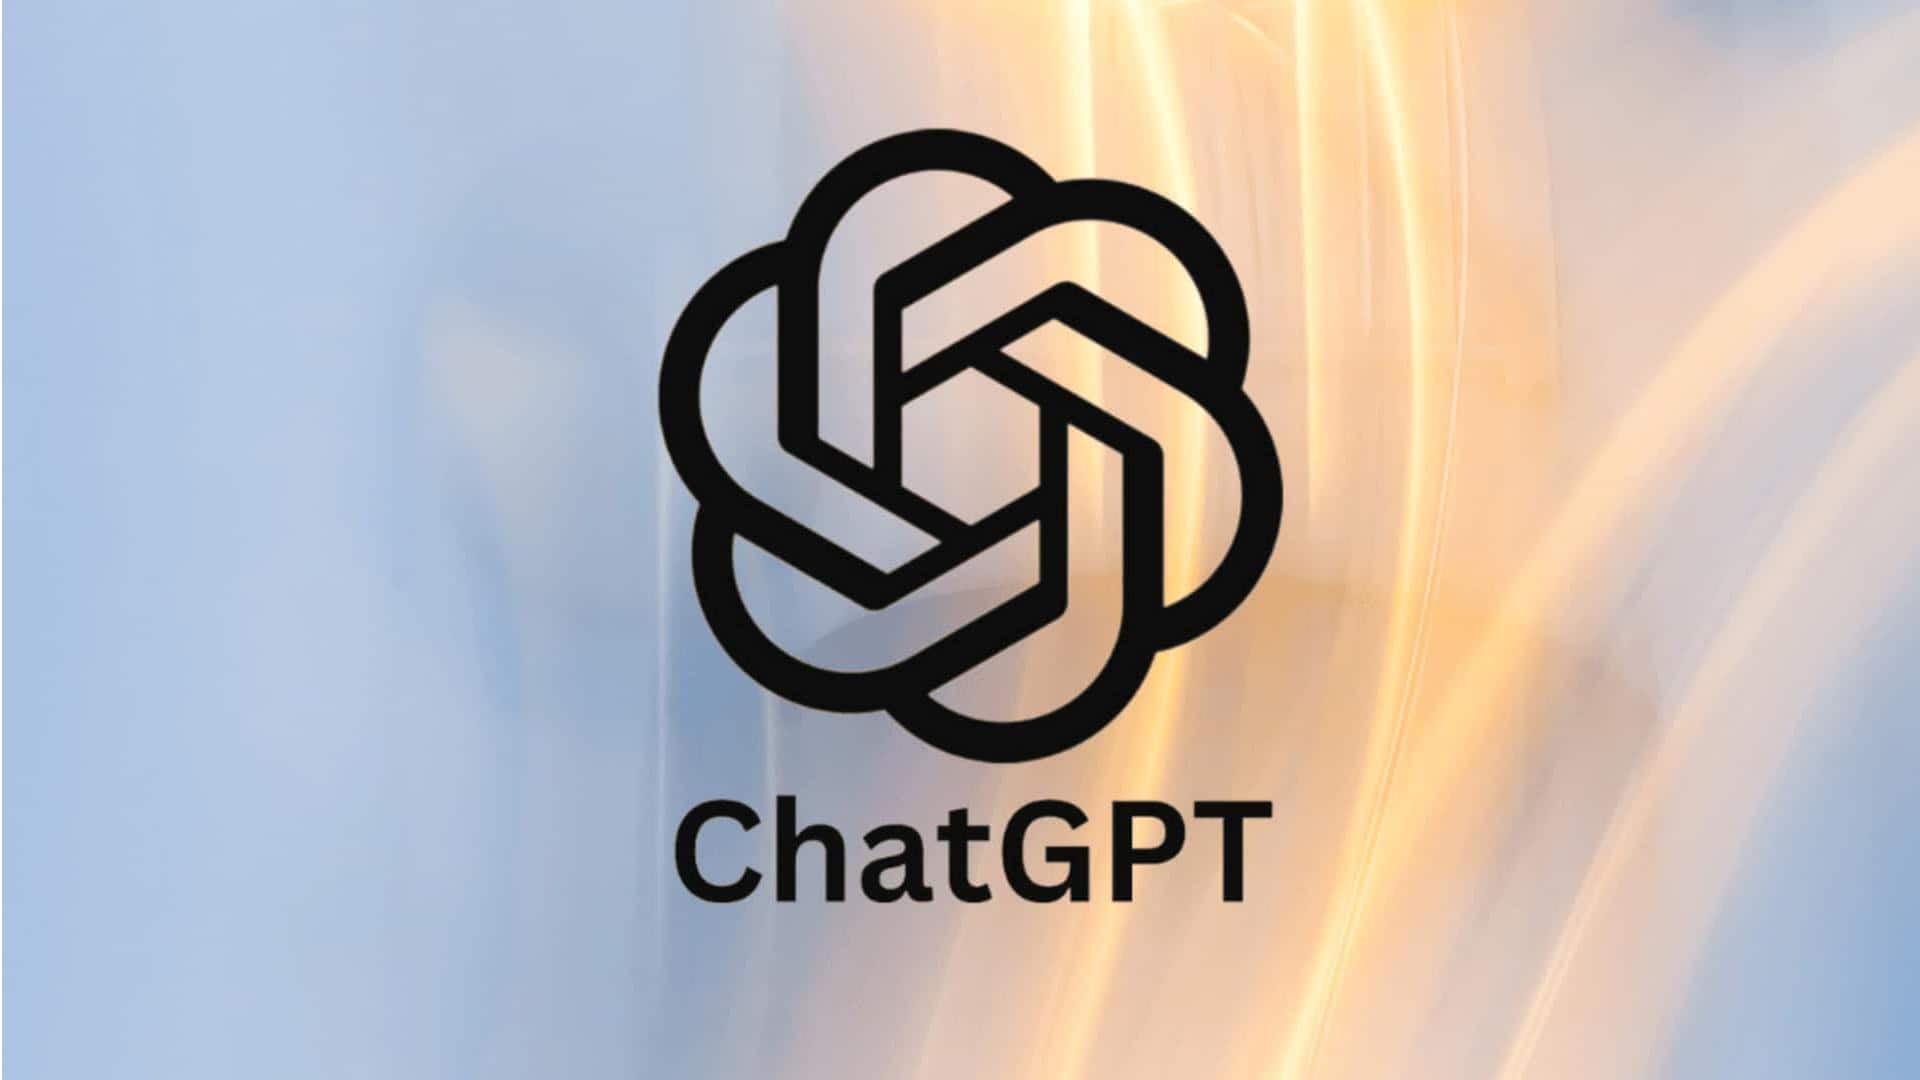 ChatGPT का इस्तेमाल करने के लिए अब नहीं होगी साइन अप की जरूरत